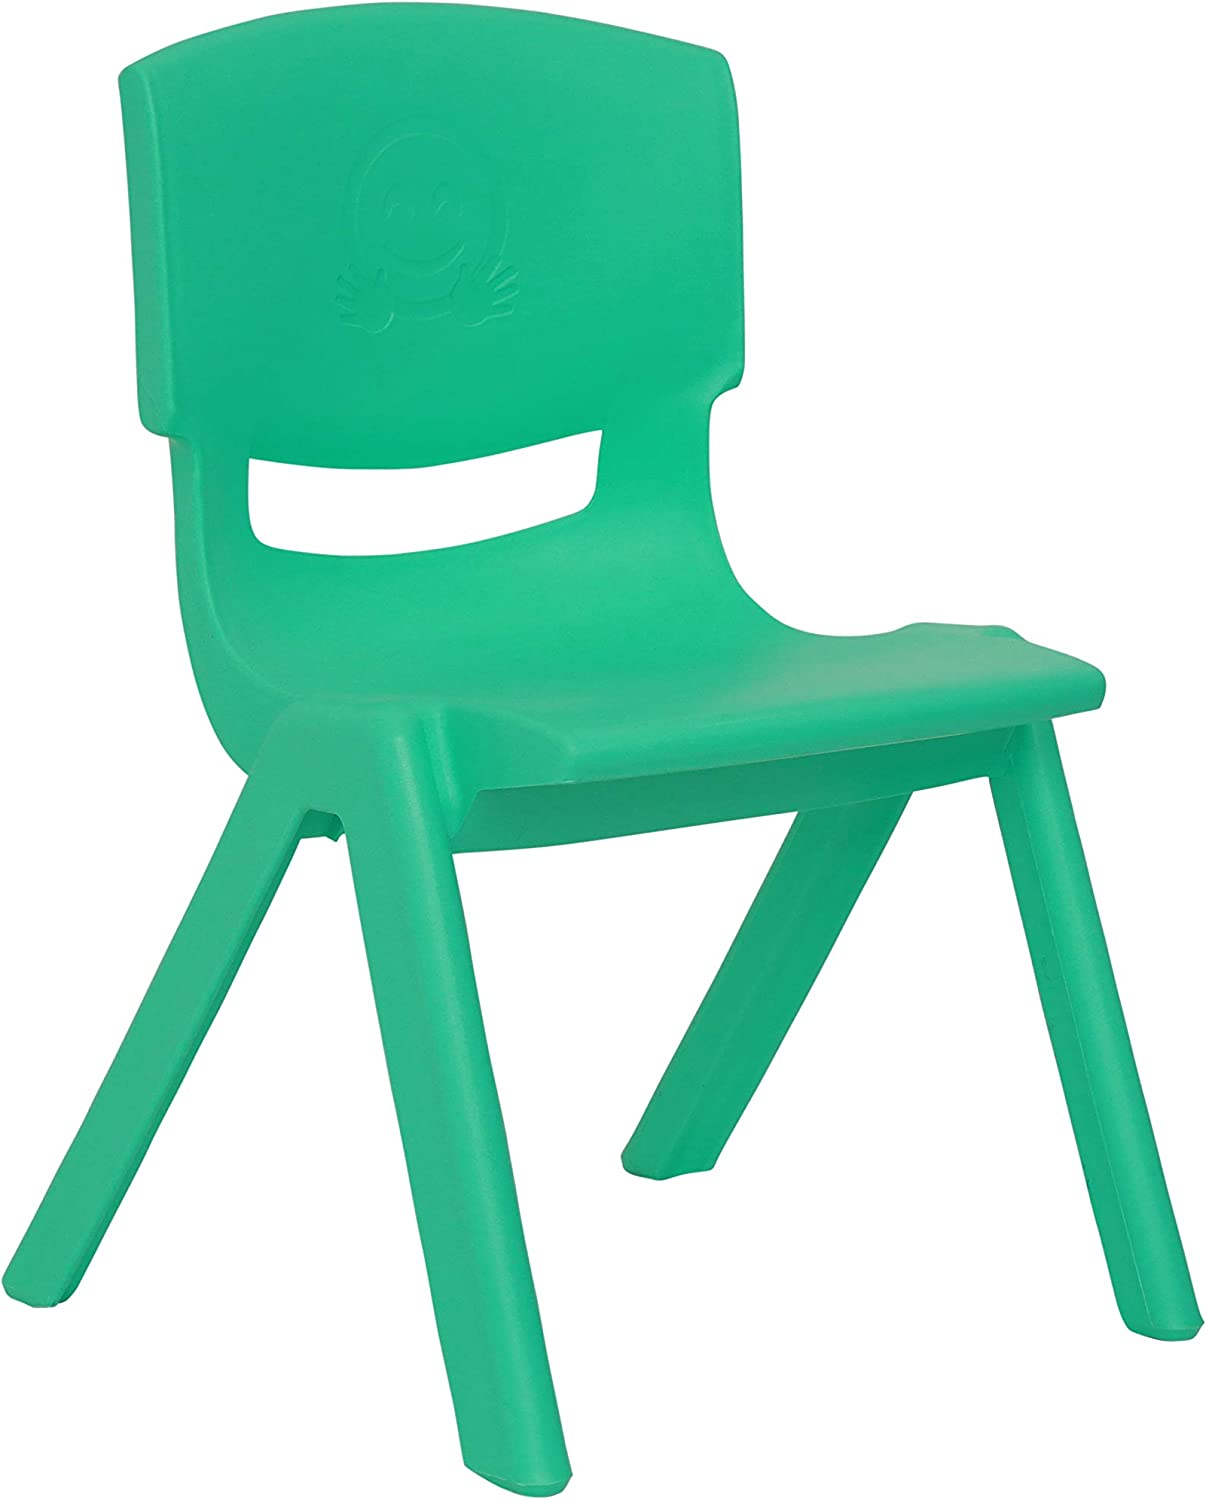 كرسي الروضات بلاستيك - 34 سم - أخضر